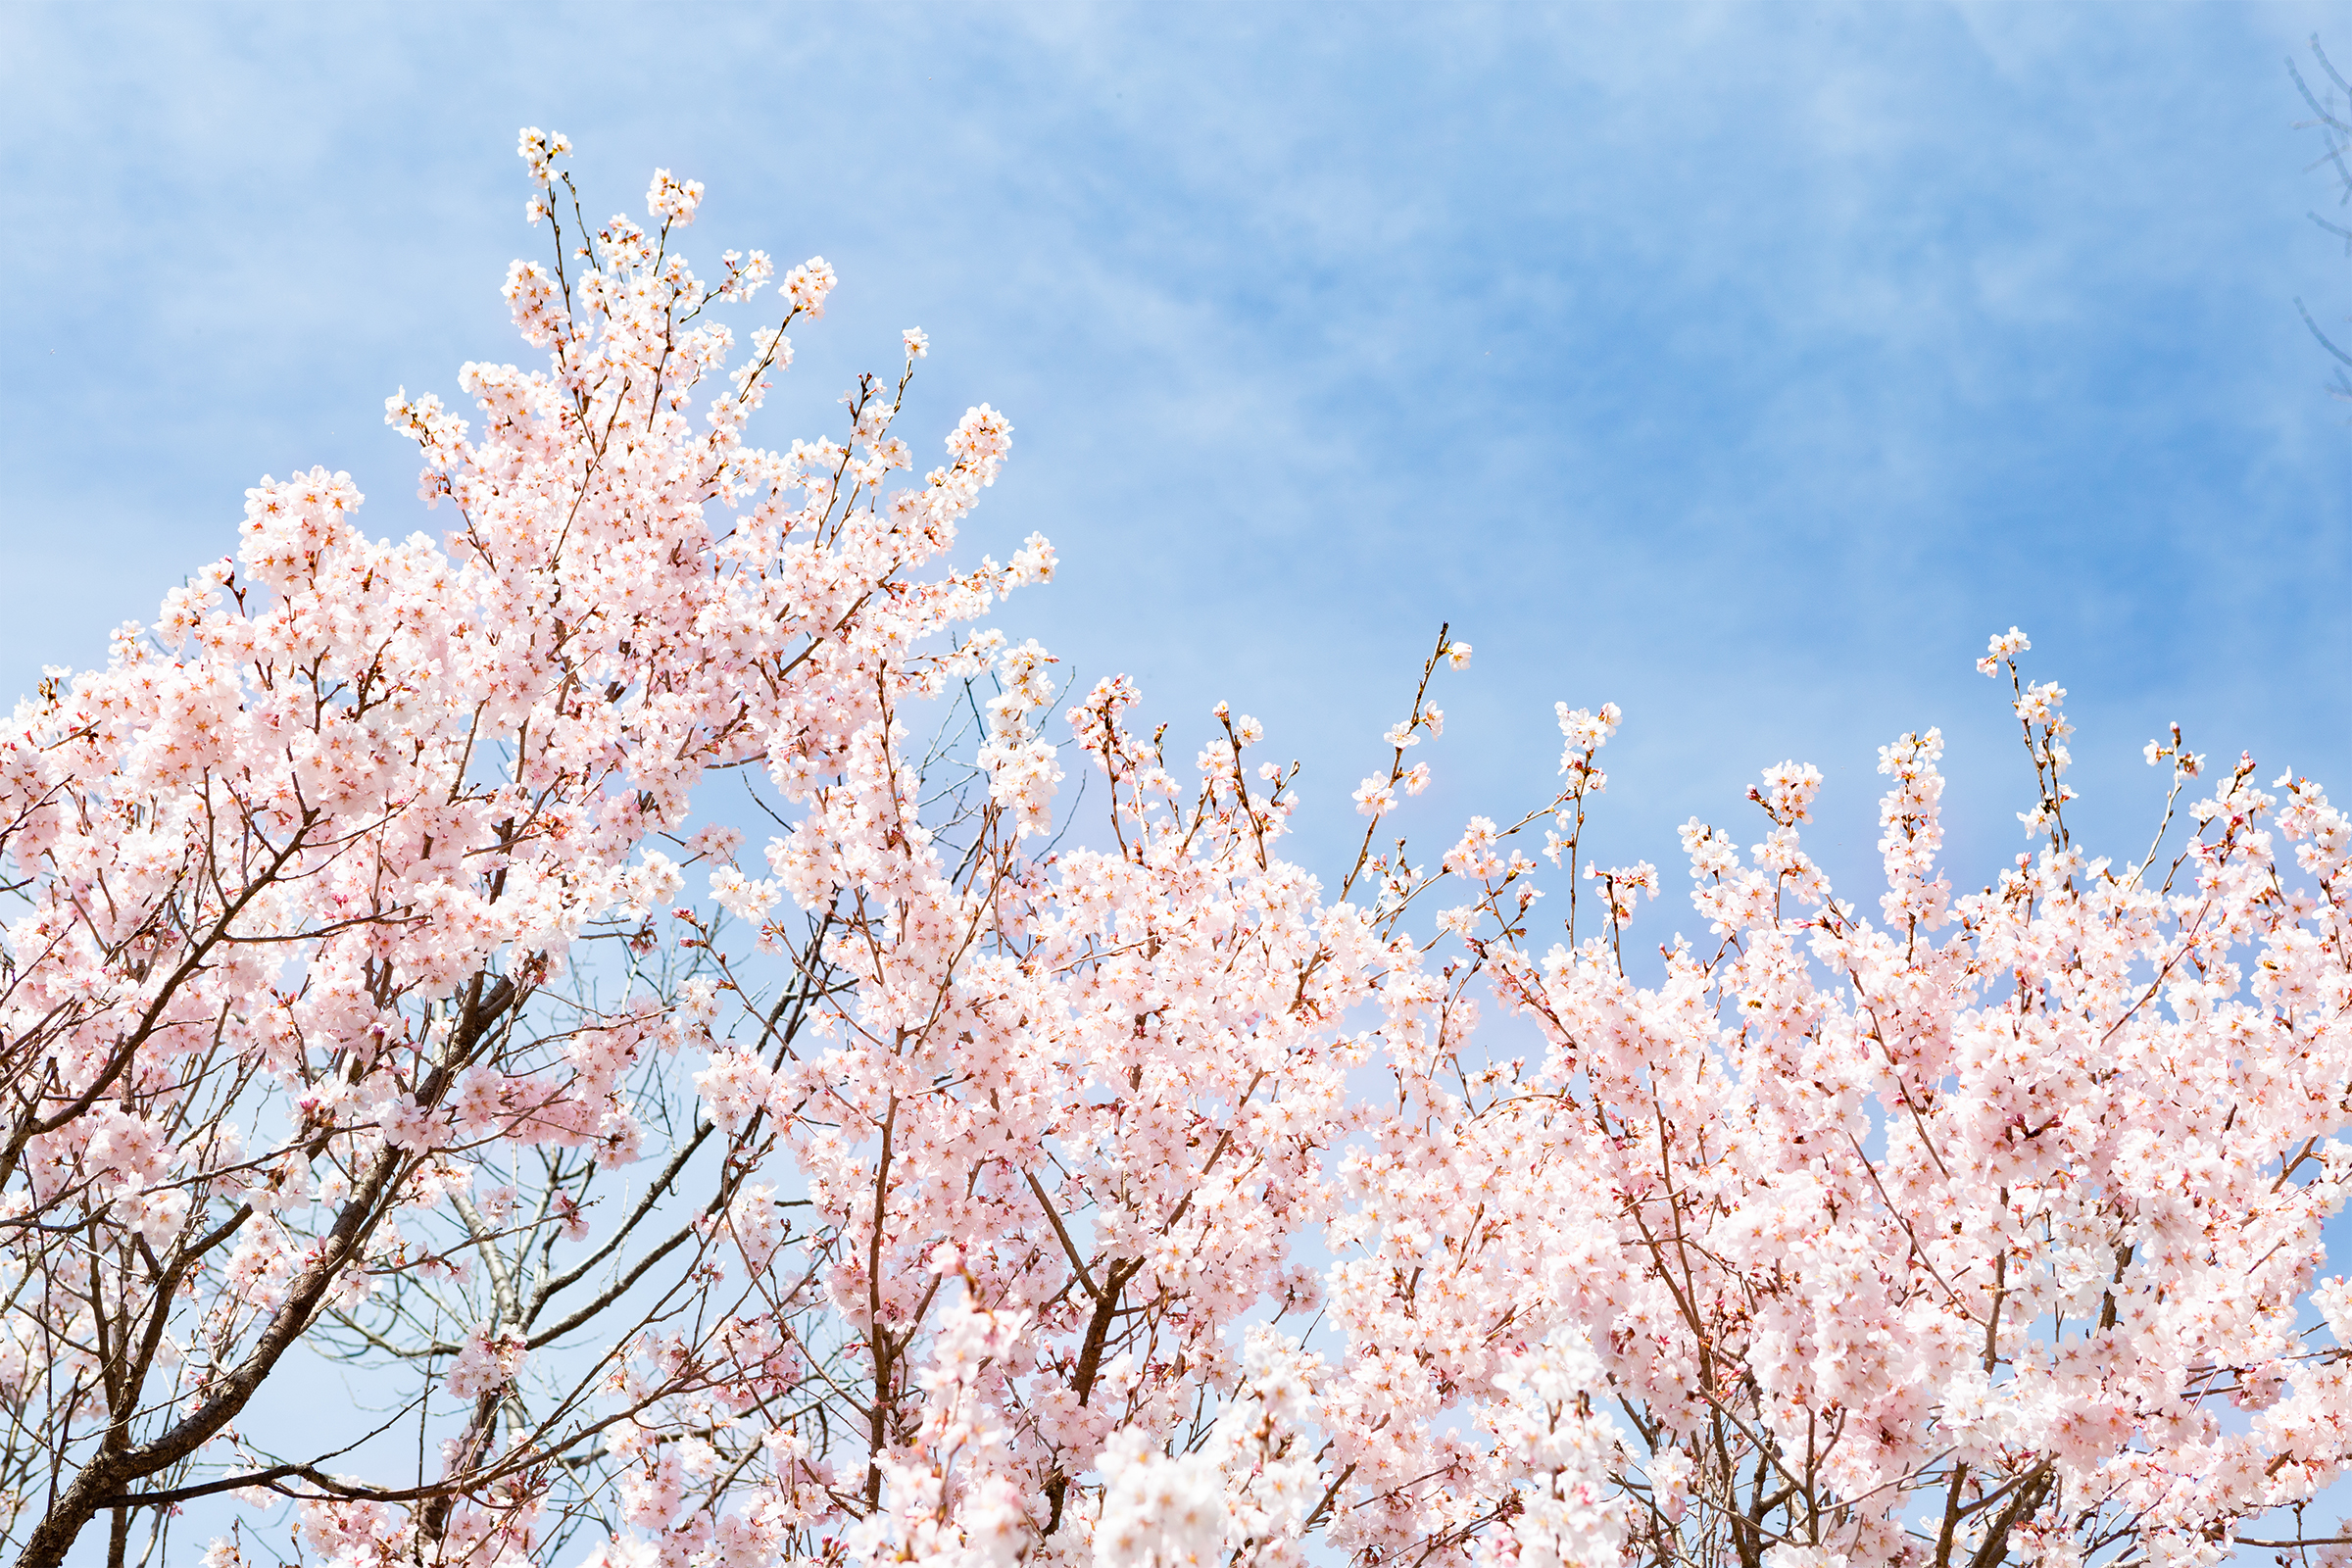 青空と桜 さくら 03 無料の高画質フリー写真素材 イメージズラボ